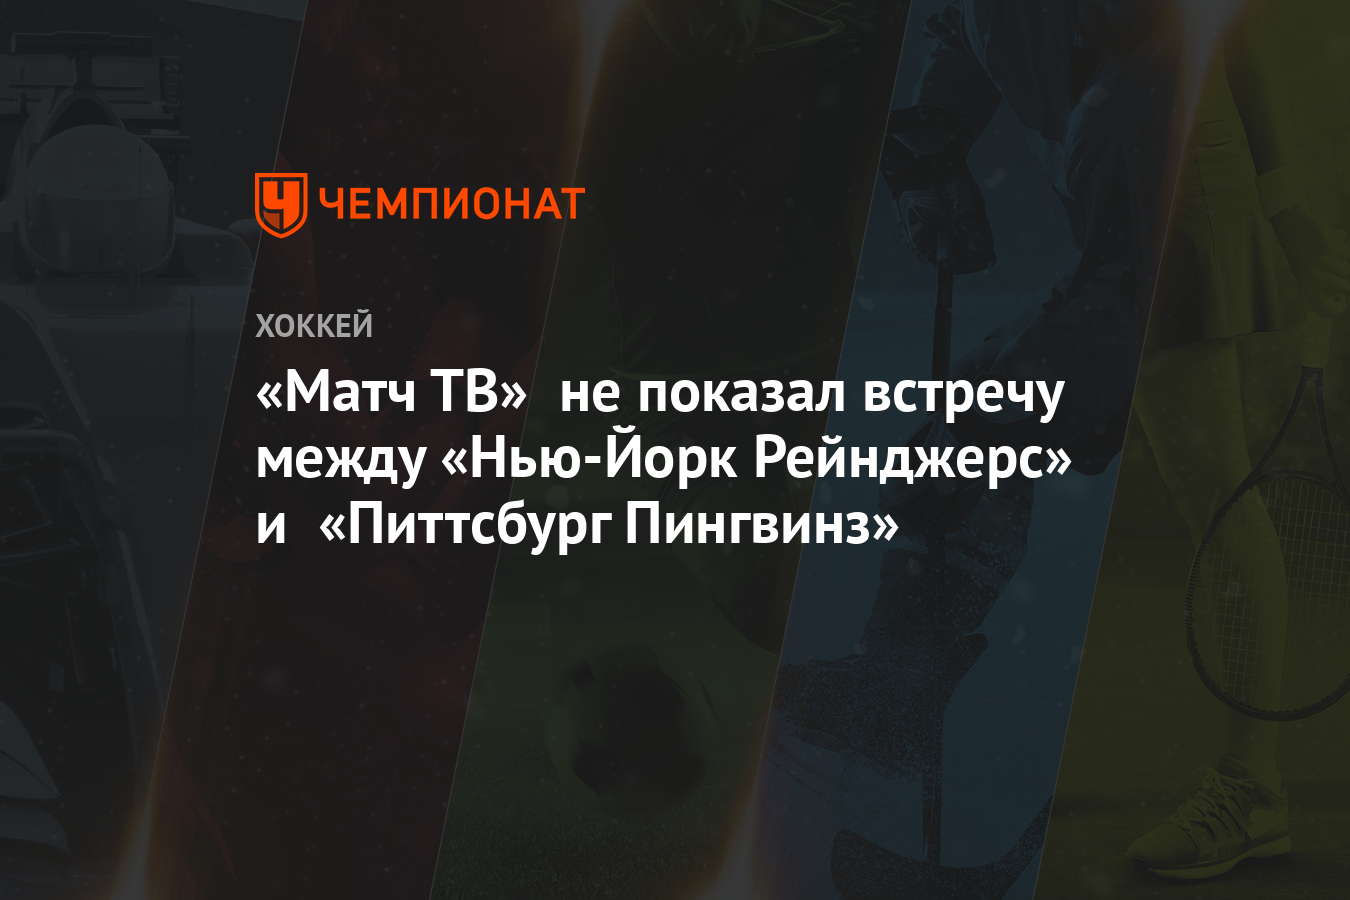 Match Tv Kommentatoram Match Tv Rekomendovali Vozderzhatsya Ot Anglicizmov Realnoe Vremya See More Of Match Tv On Facebook Flaws5